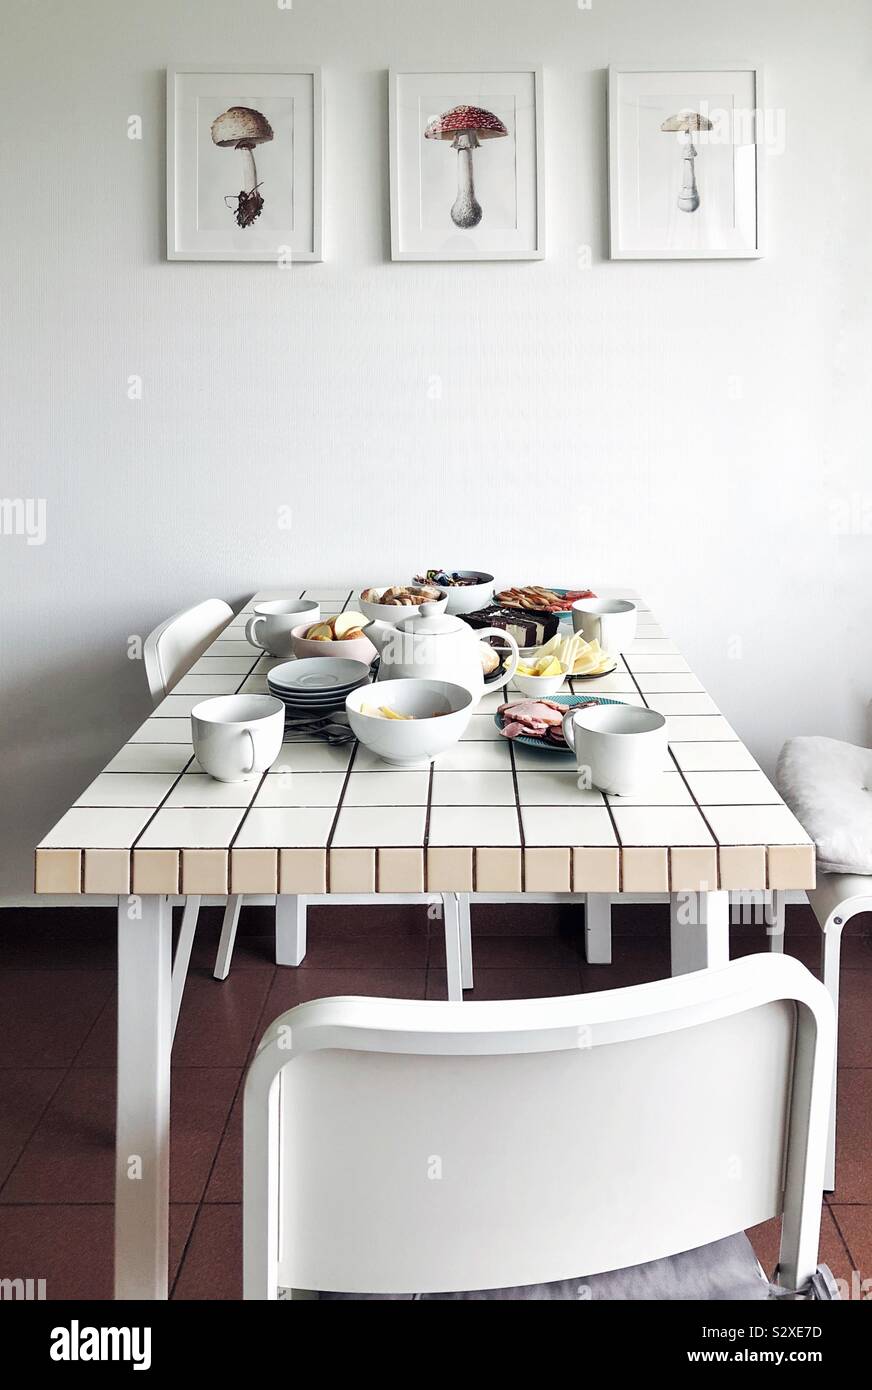 Modern design white kitchen with table set for tea Stock Photo